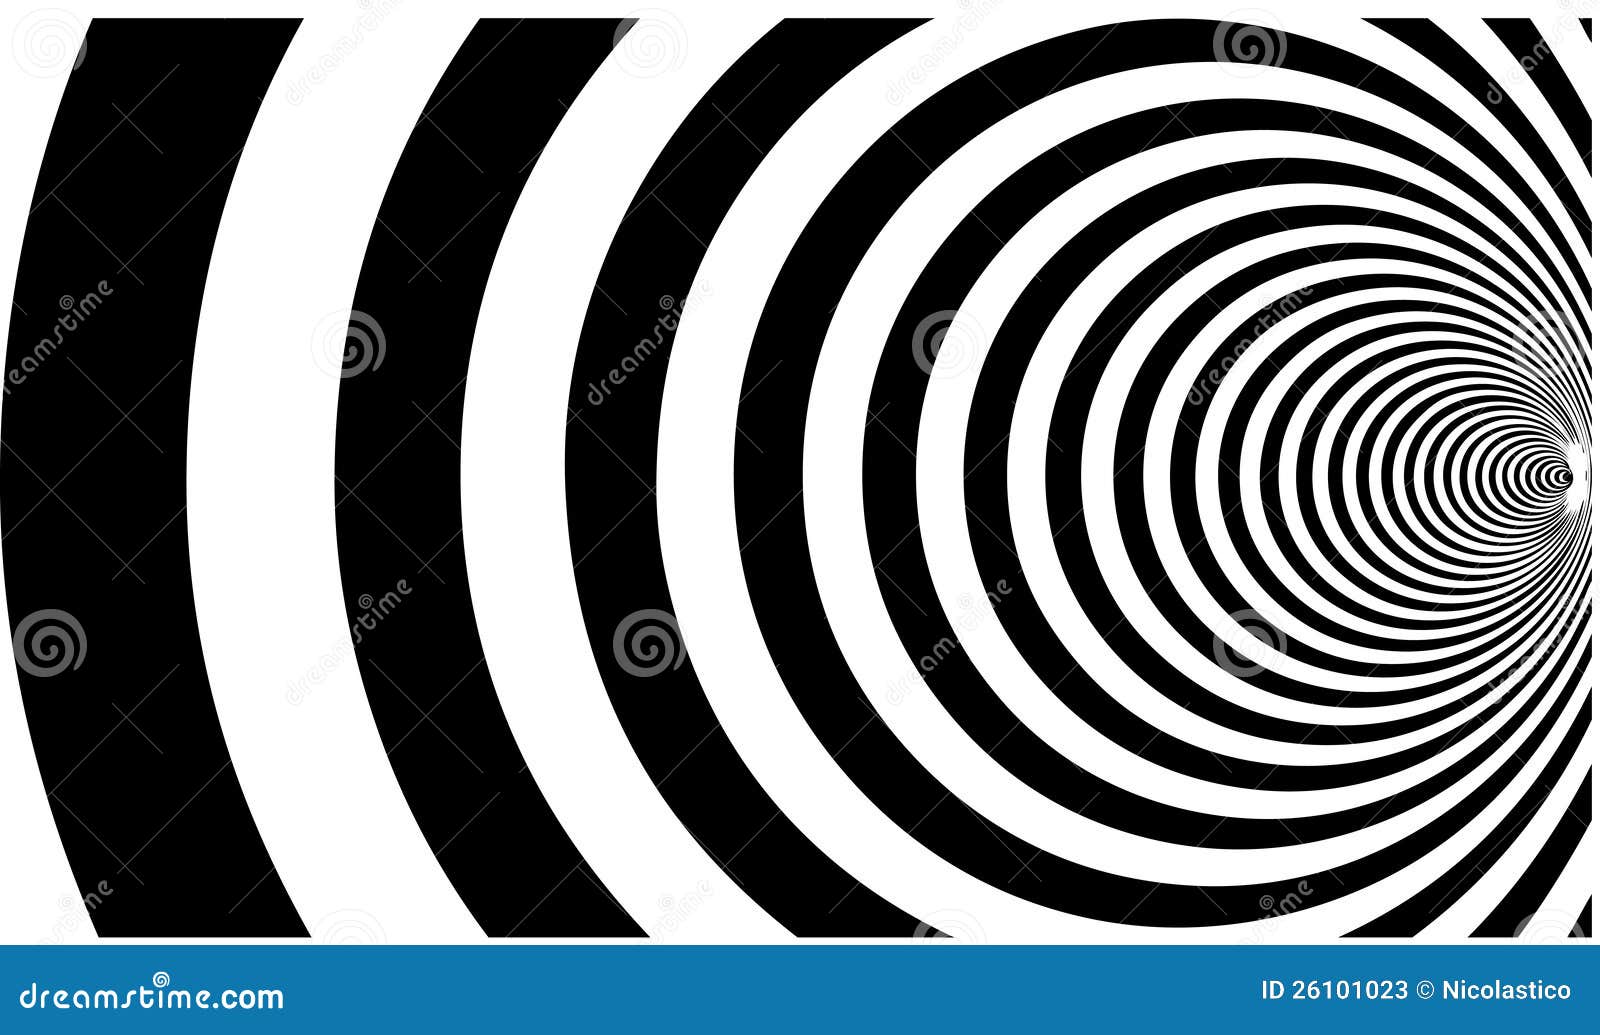 En illustrerad spiral hypnotisk modell som isoleras på en vit bakgrund.